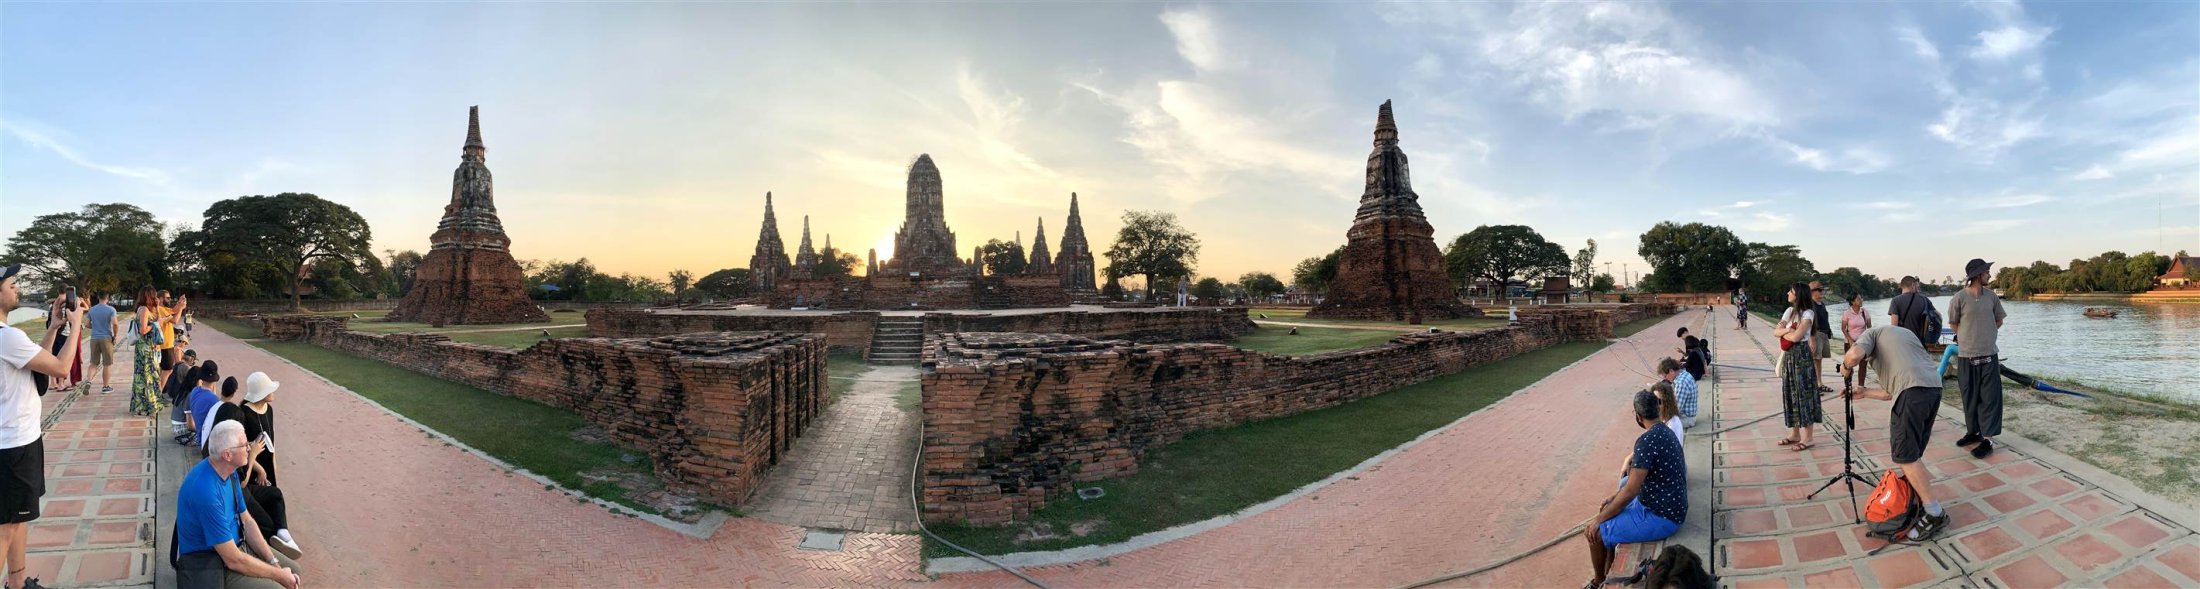 Toàn cảnh đền Chaiwatthanaram tại Ayutthaya Thái Lan